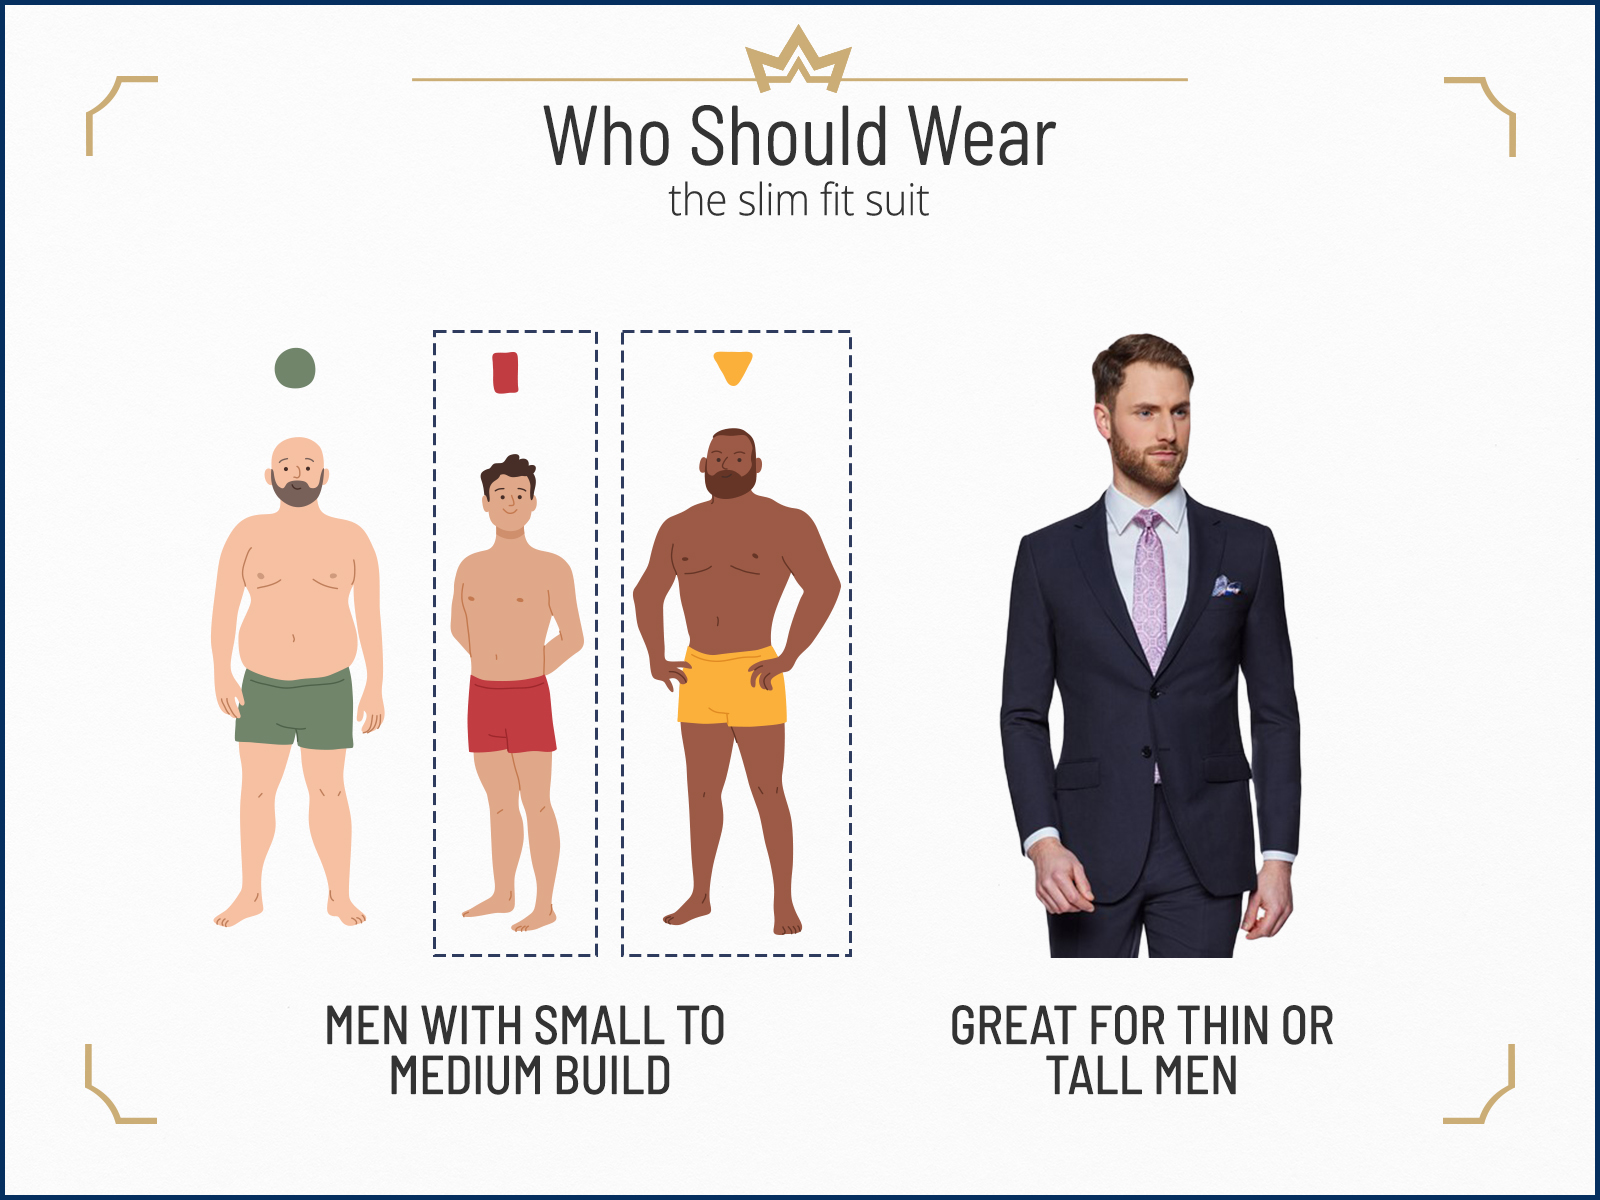 Who should wear a slim-fit suit